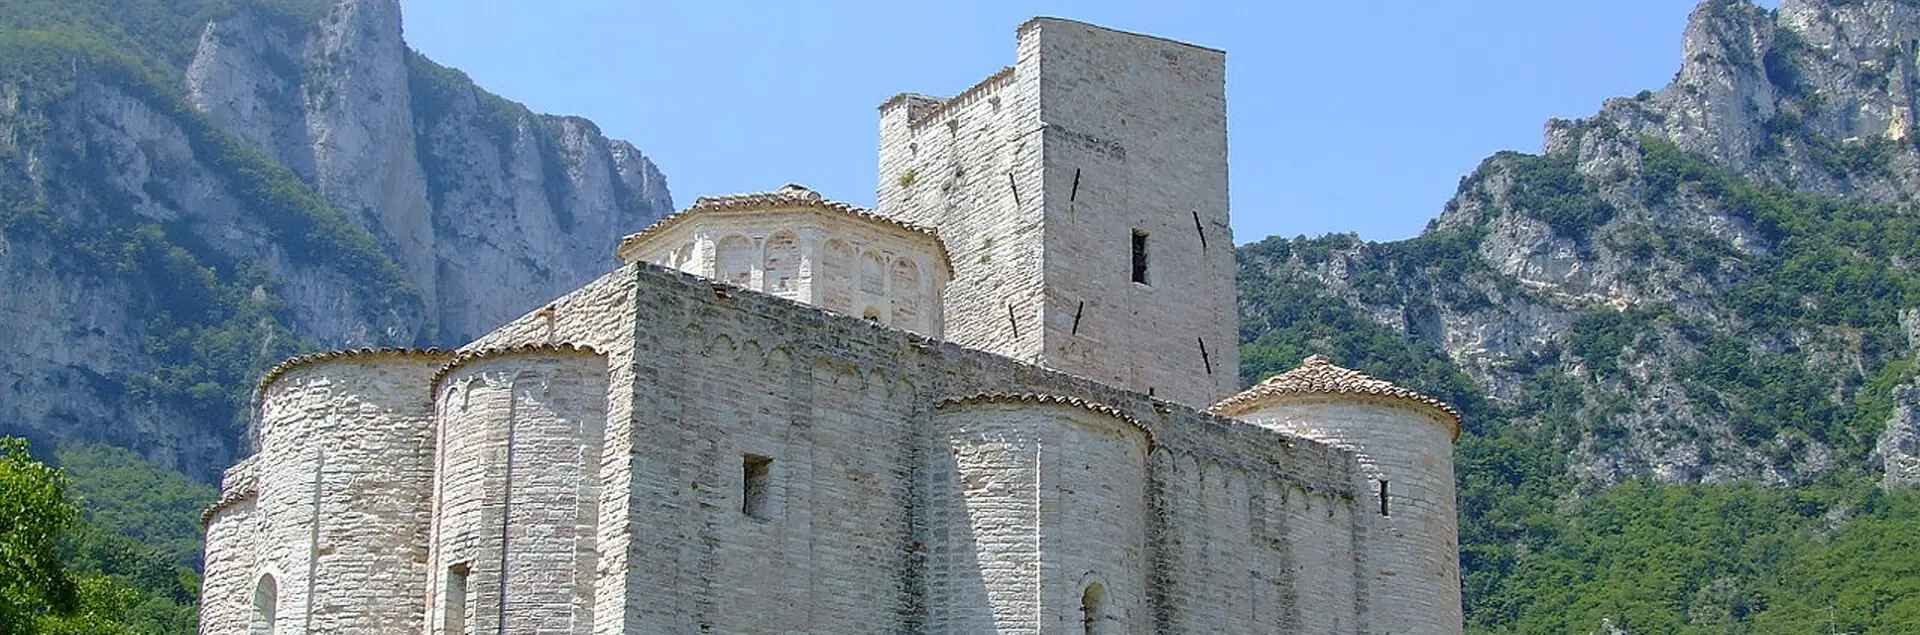 Abbazia di San Vittore